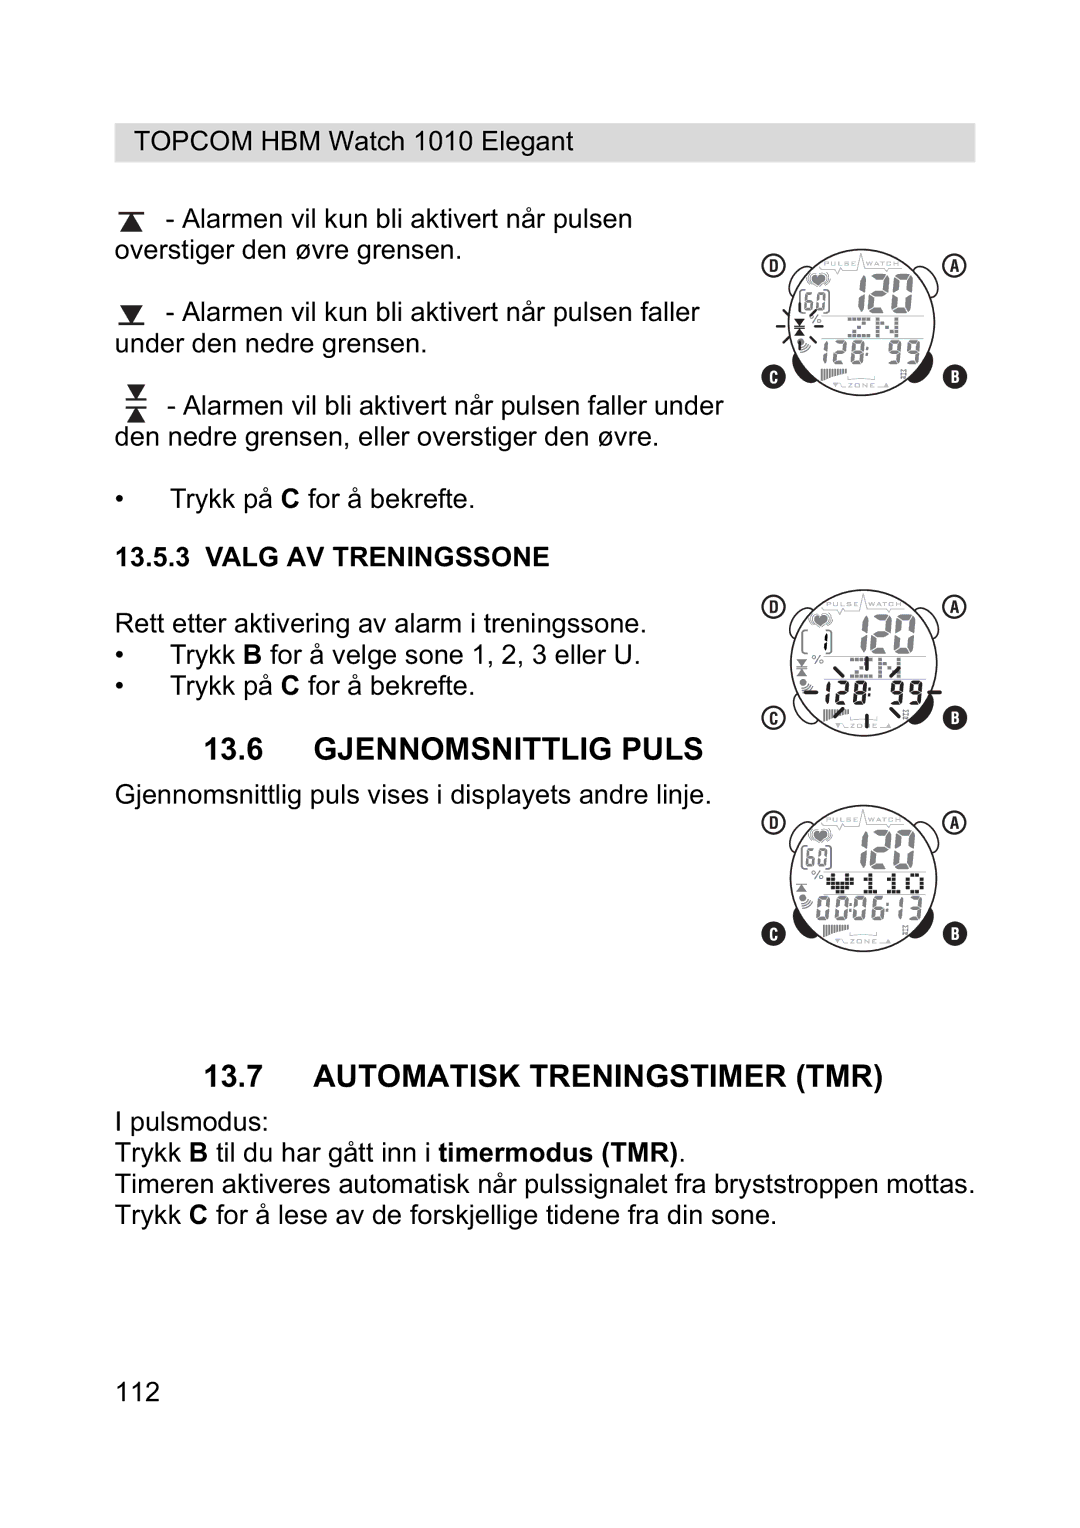 Topcom 1010 Elelgant manual Gjennomsnittlig Puls, Automatisk Treningstimer TMR, Valg AV Treningssone 